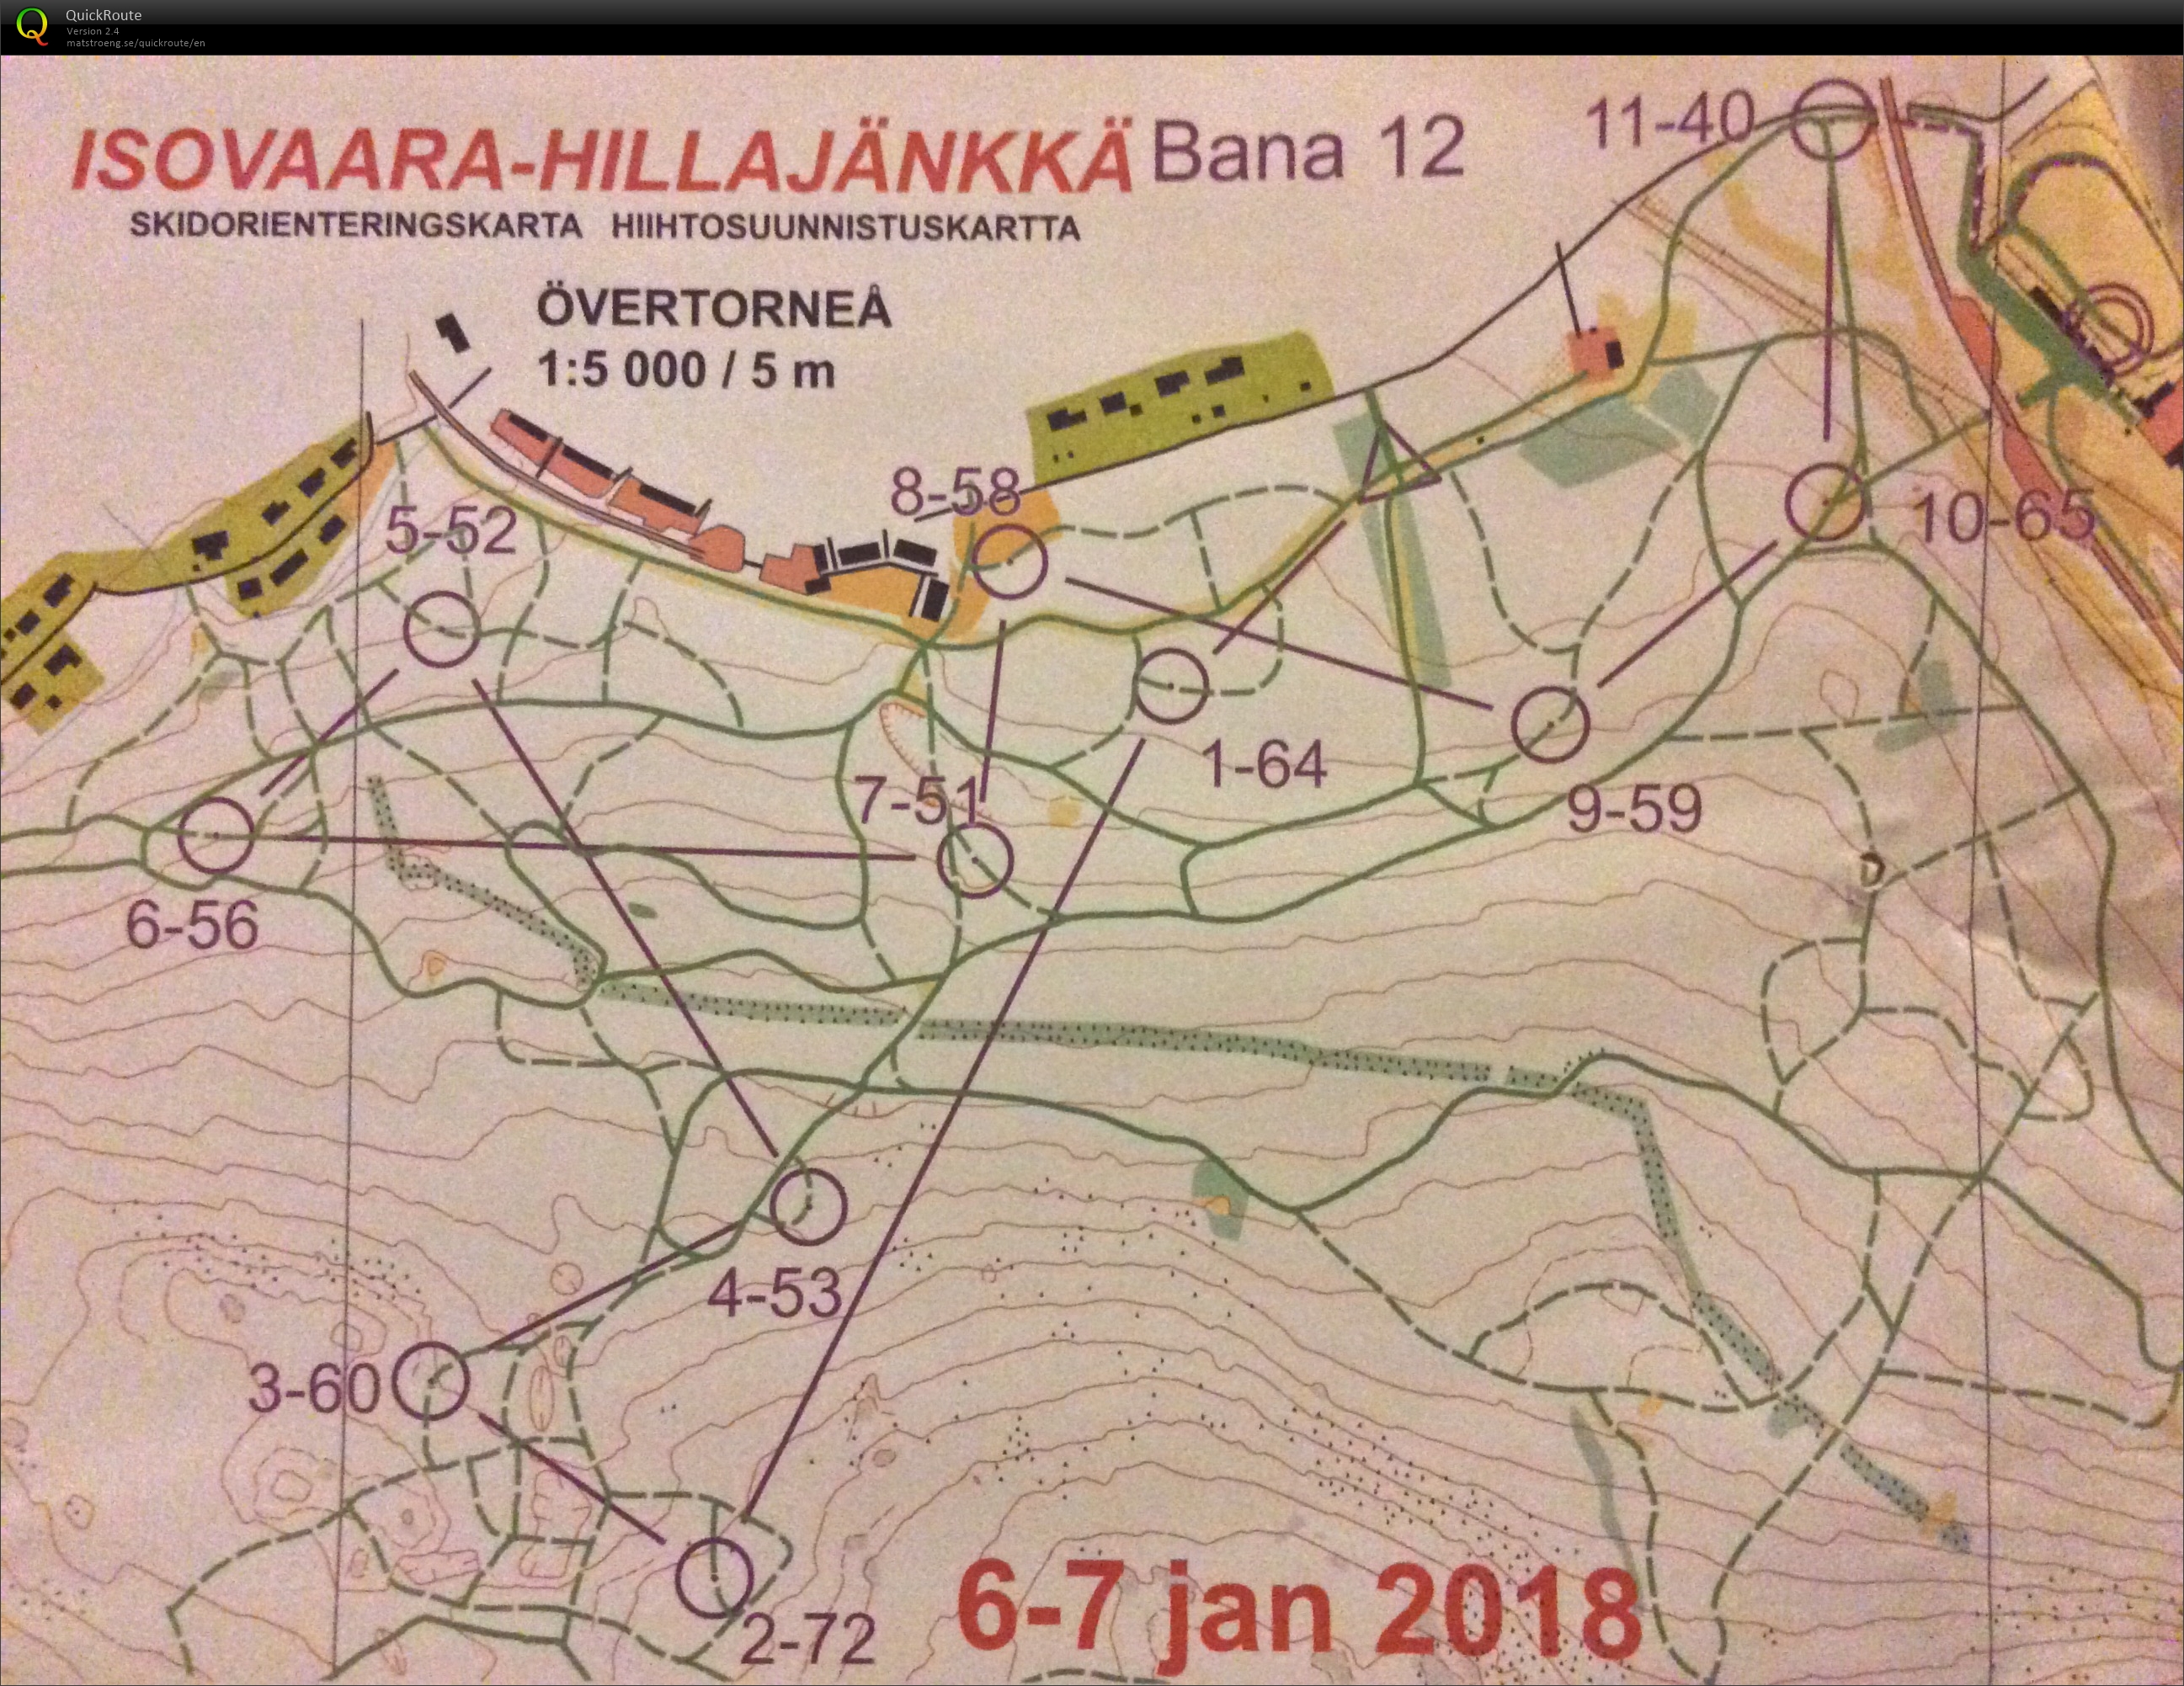 Skidorientering Övertorneå Sprint (07-01-2018)